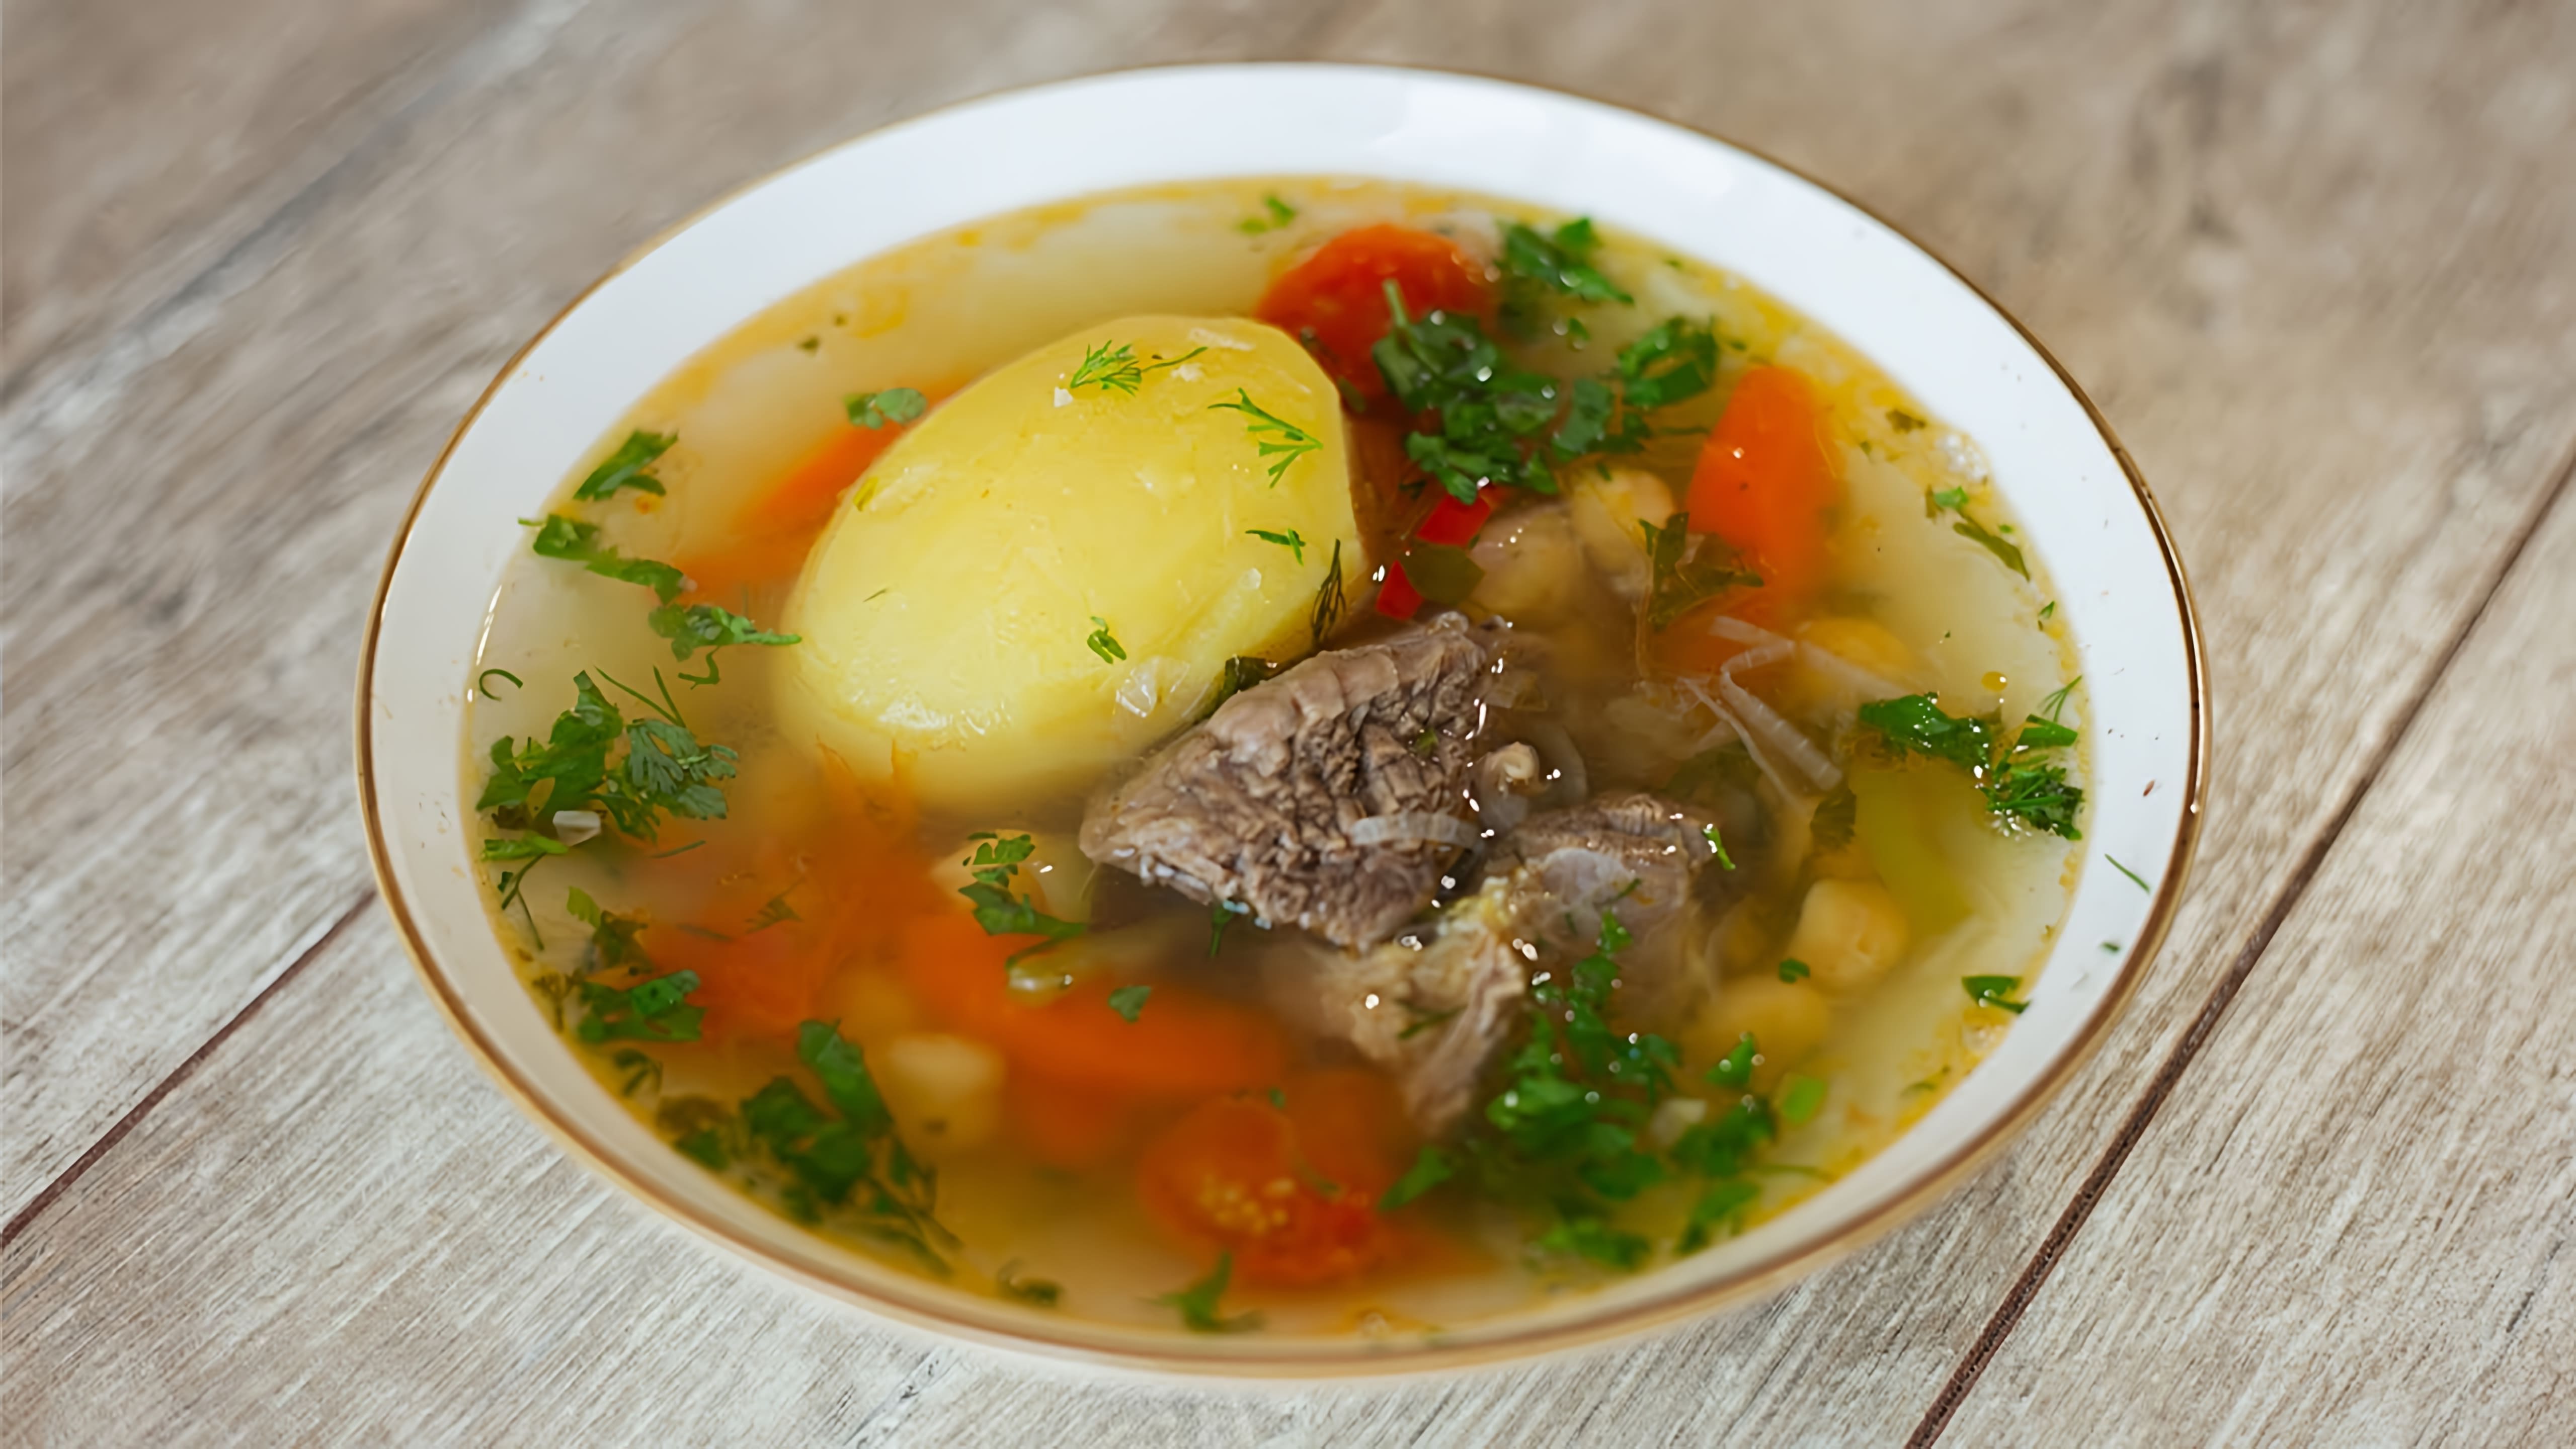 В этом видео демонстрируется процесс приготовления шурпы - традиционного узбекского супа